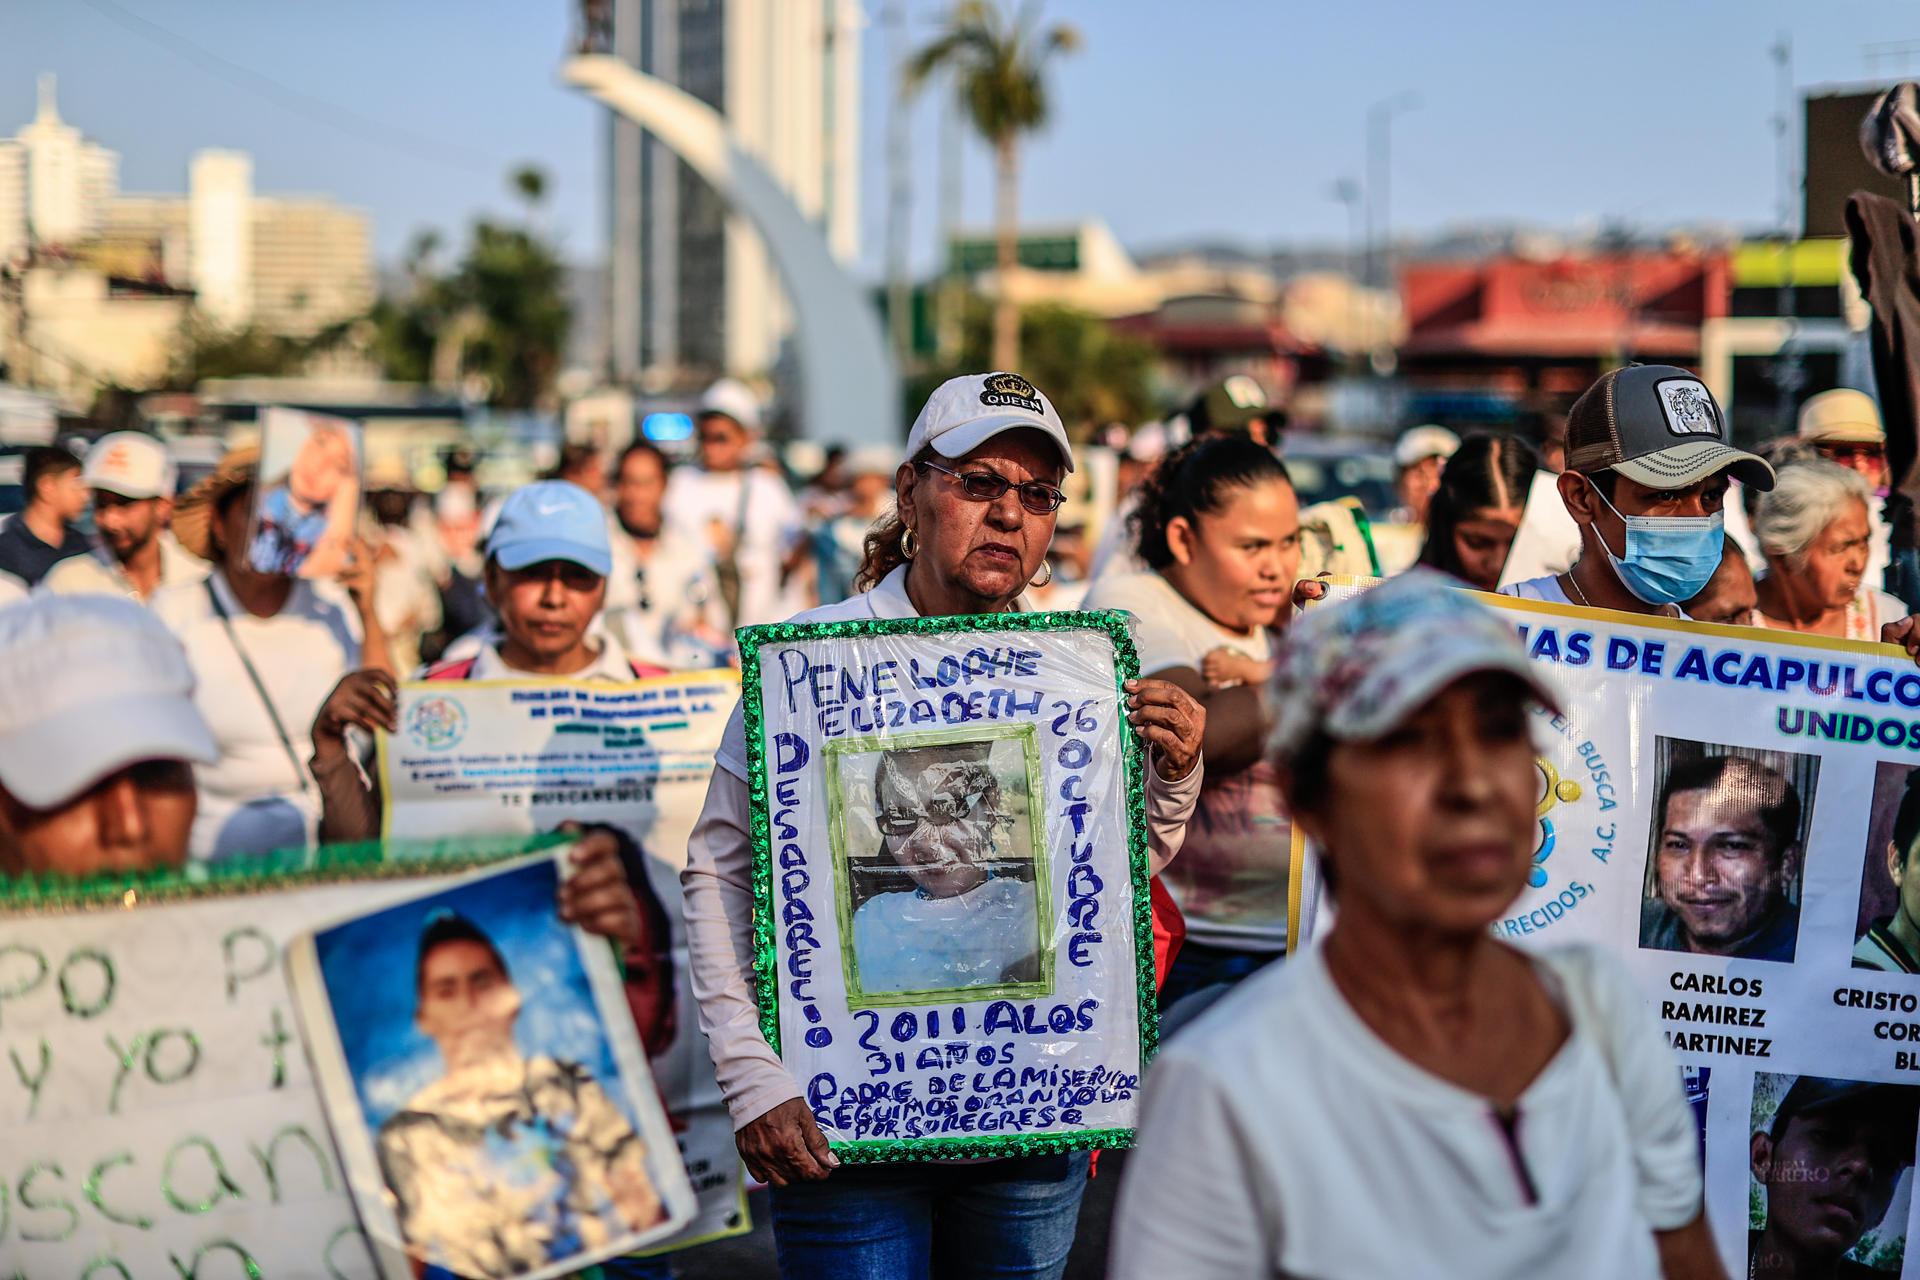  Madres de hijos desaparecidos y diversos colectivos marcharon en el Balneario de Acapulco, México